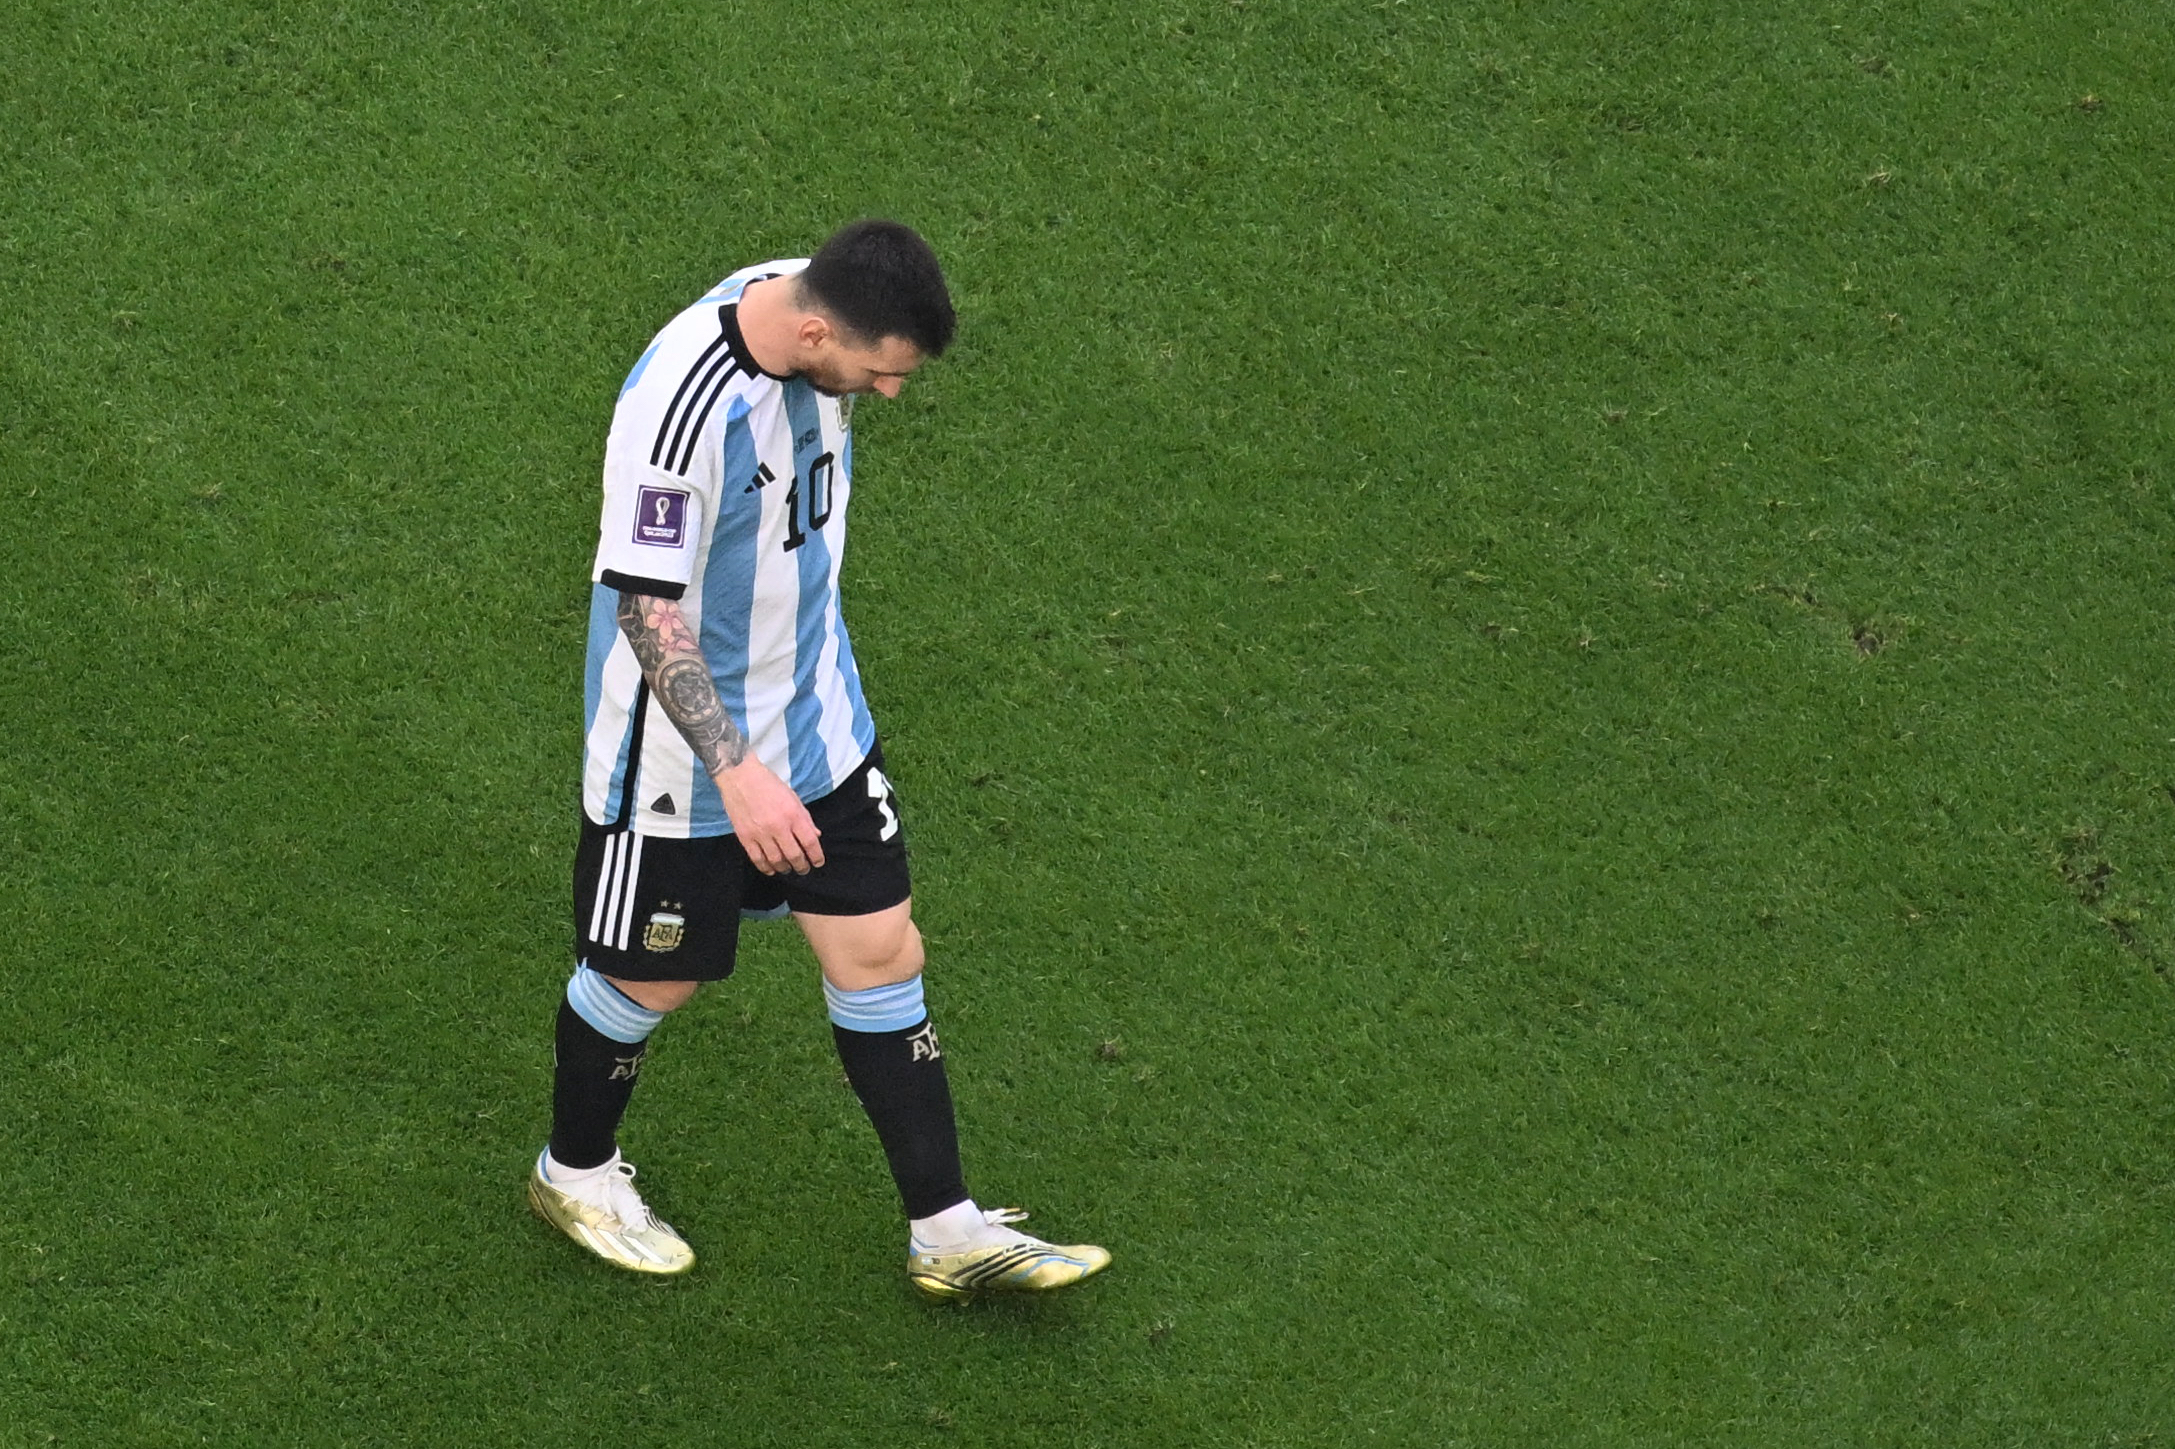 Thật không ngờ rằng Messi cũng từng trải qua những trận đấu thất bại. Nhưng điều đó lại khiến cho anh trở nên vượt trội hơn và đưa tên tuổi của mình đi lên. Hãy xem ảnh Messi thua để cảm nhận những dấu ấn đó.